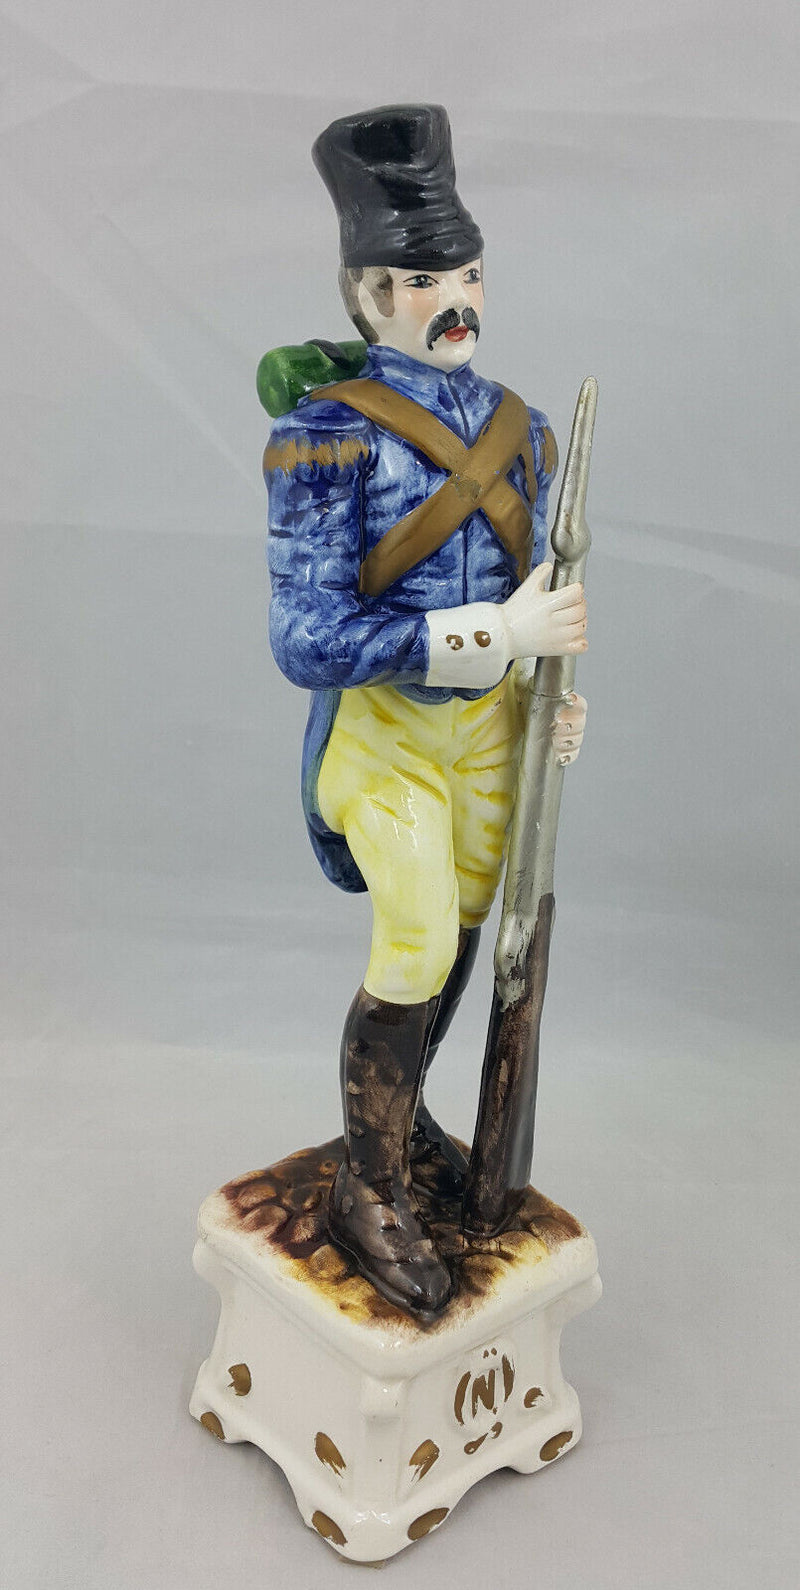 Capodimonte Large Figurine Soldier With Gun - Broken/Scratches